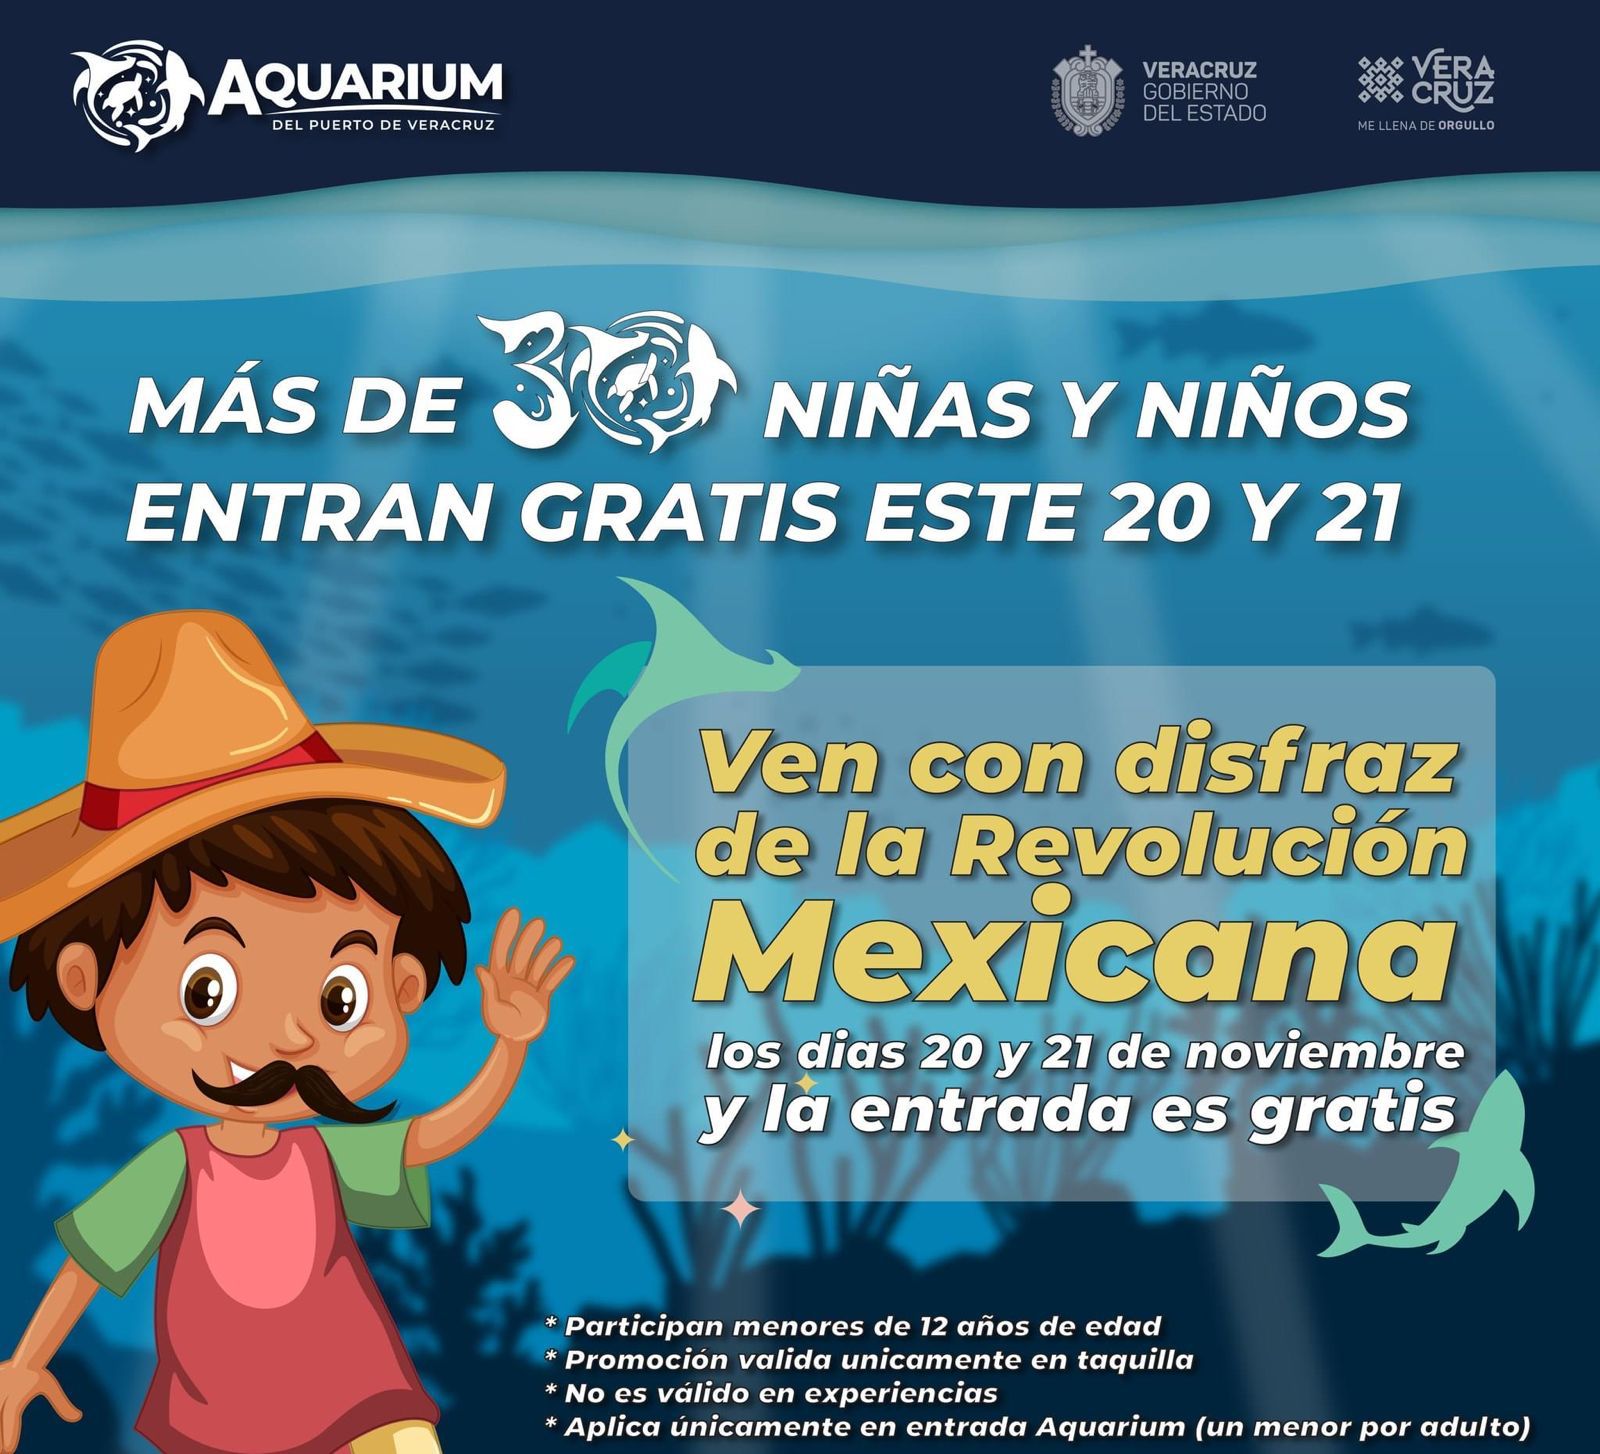 Disfrázate y entra gratis al Aquarium del Puerto de Veracruz